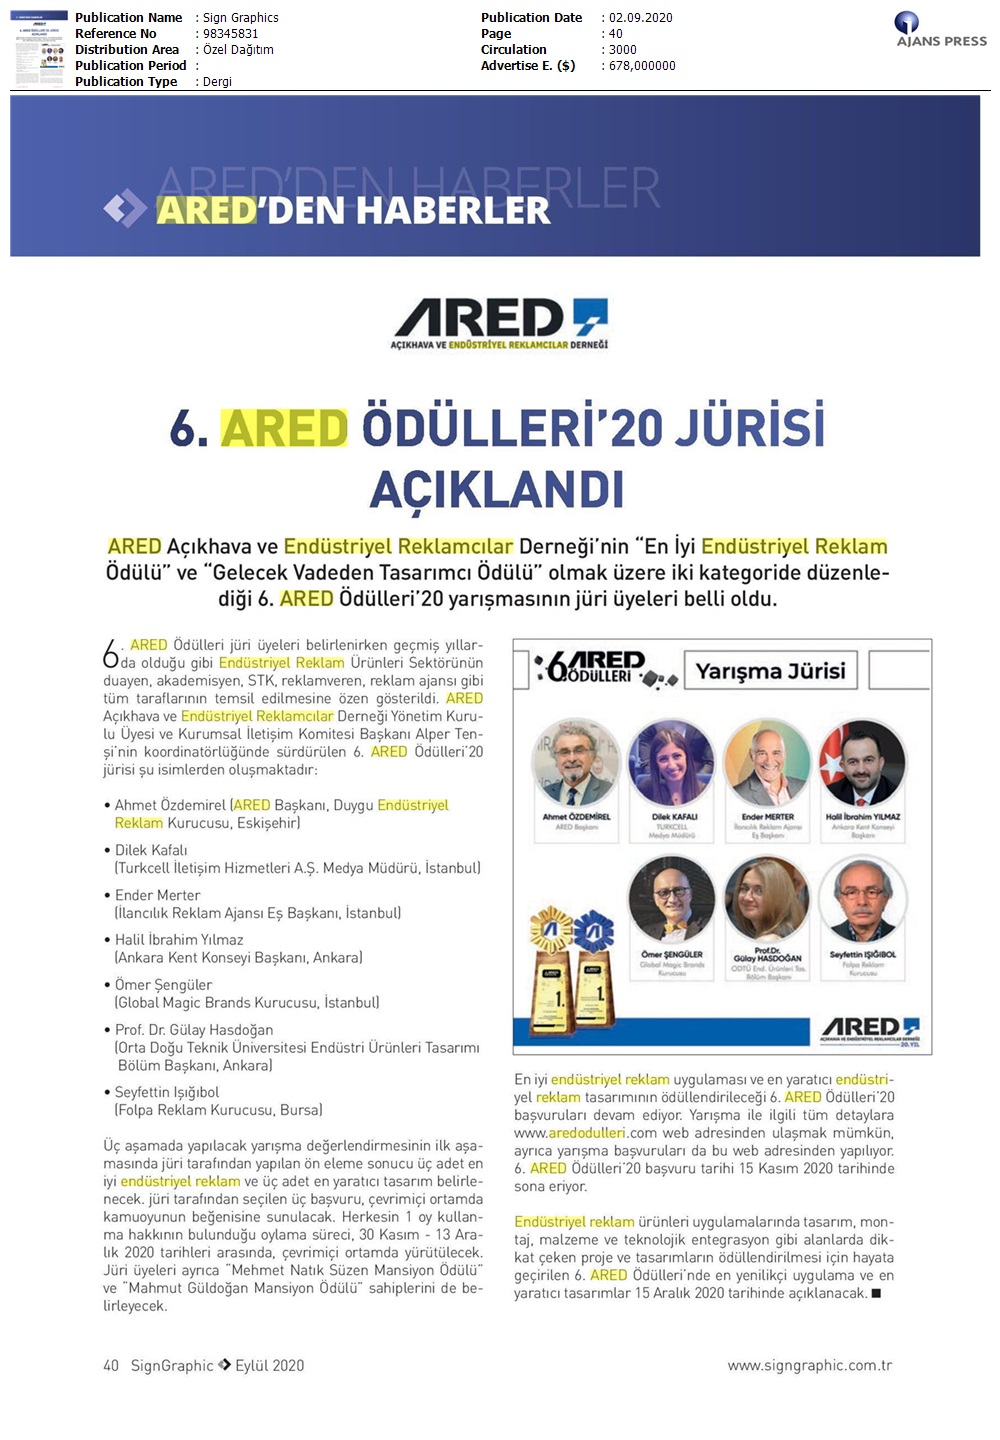 ARED Ödülleri'20 jürisi açıklandı